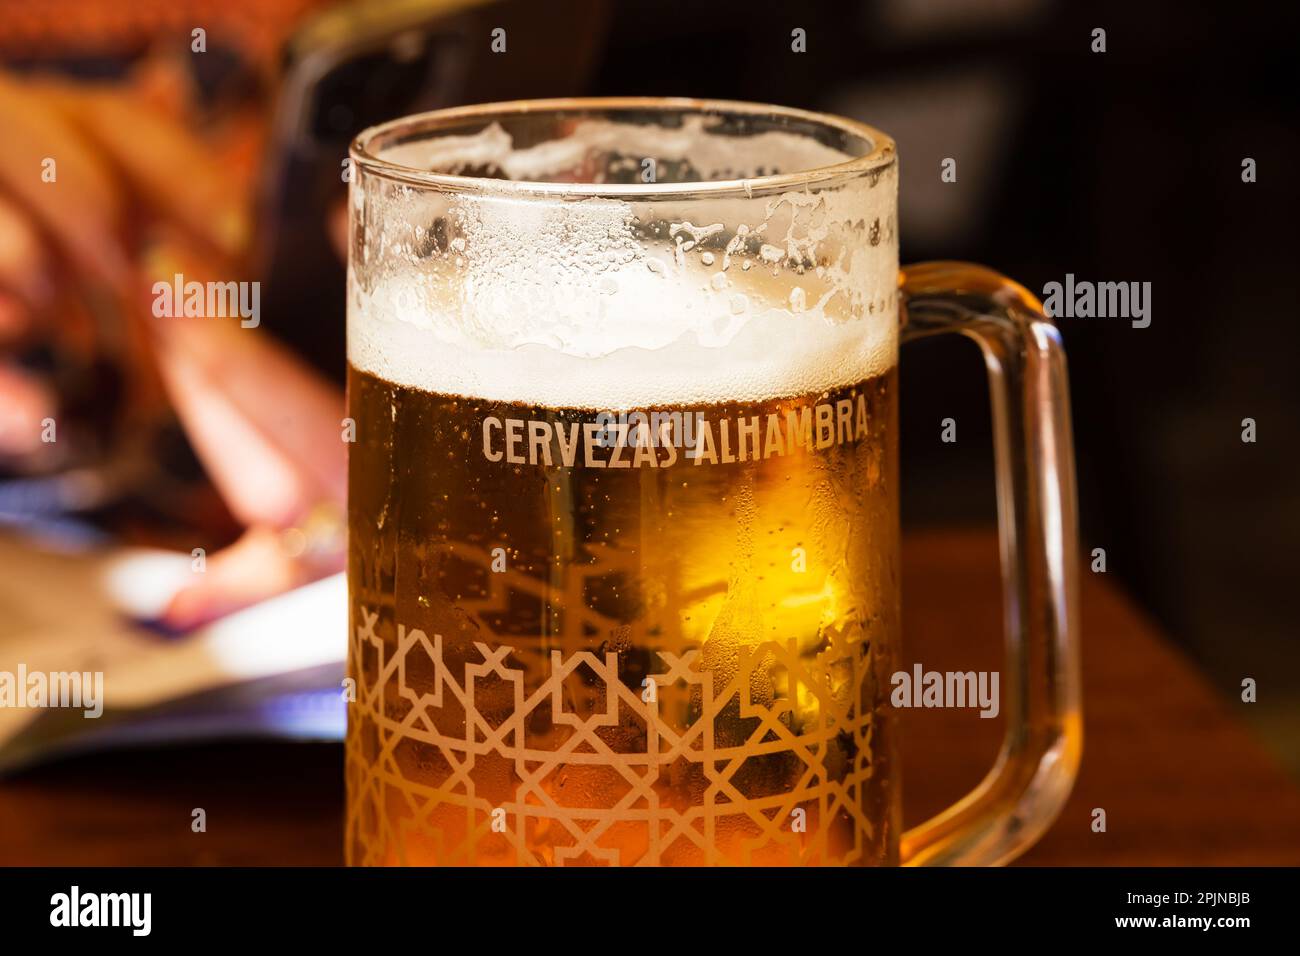 Ein erfrischendes Glas kaltes Cervezas Alhambra Lagerbier. Stockfoto